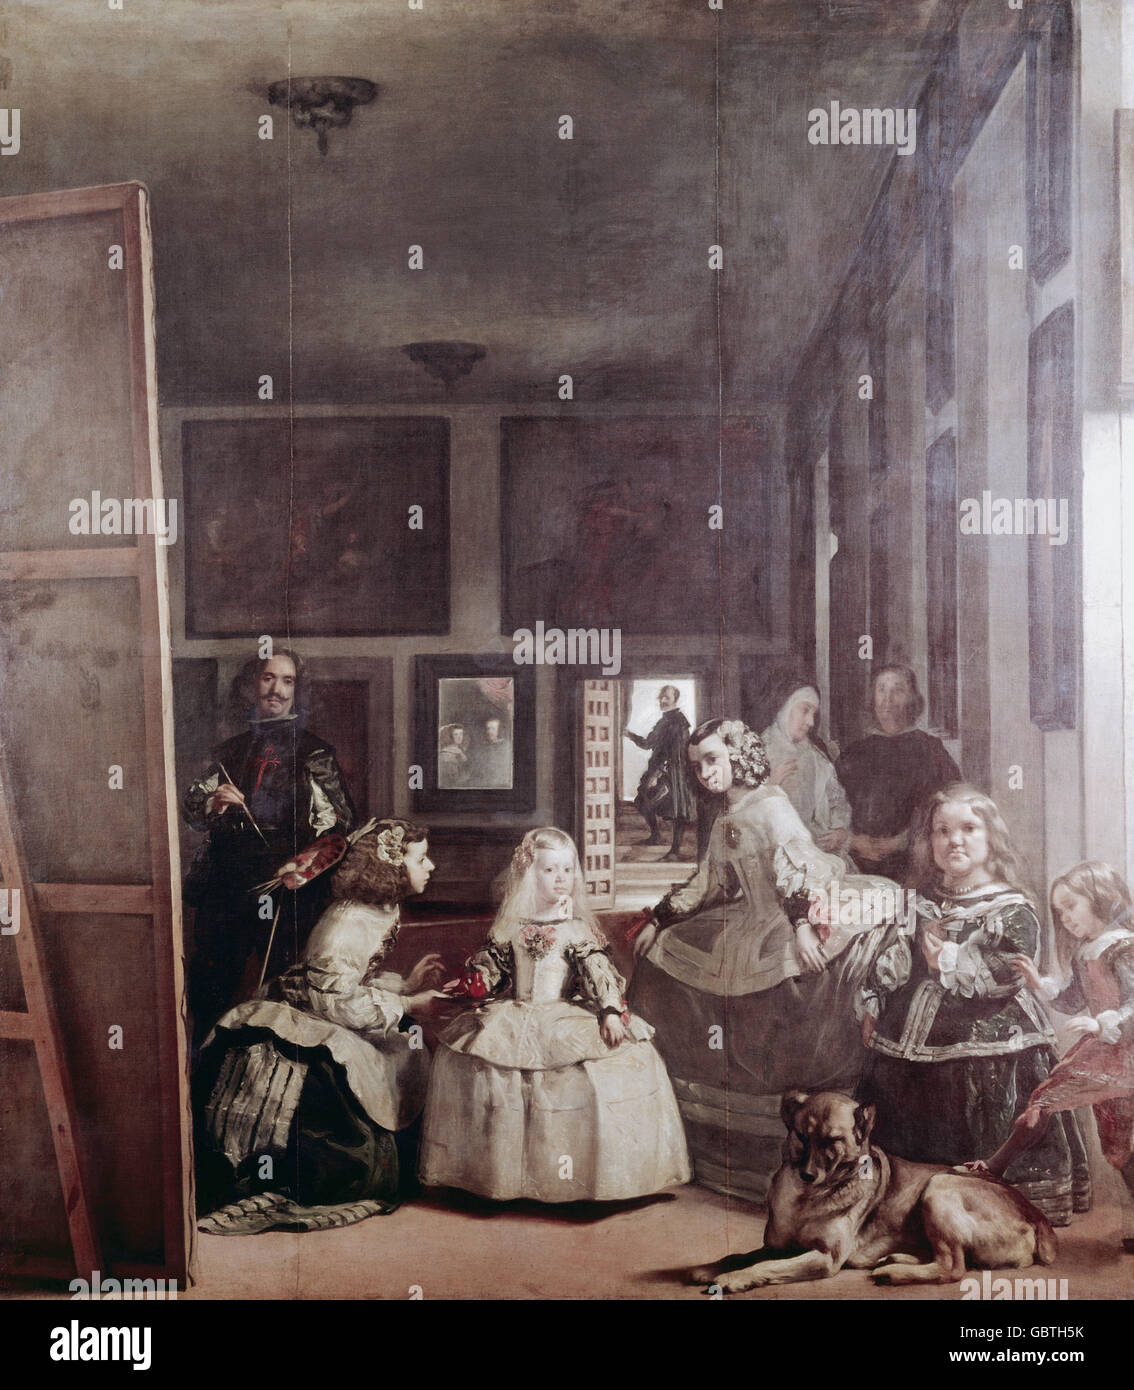 Beaux-arts, Velazquez, Diego Rodriguez de Silva y (1599 - 1660), peinture 'Les Ménines' (la bonnes de l'honneur), 1656, huile sur toile, 318 x 276 cm, Prado, Madrid, Banque D'Images